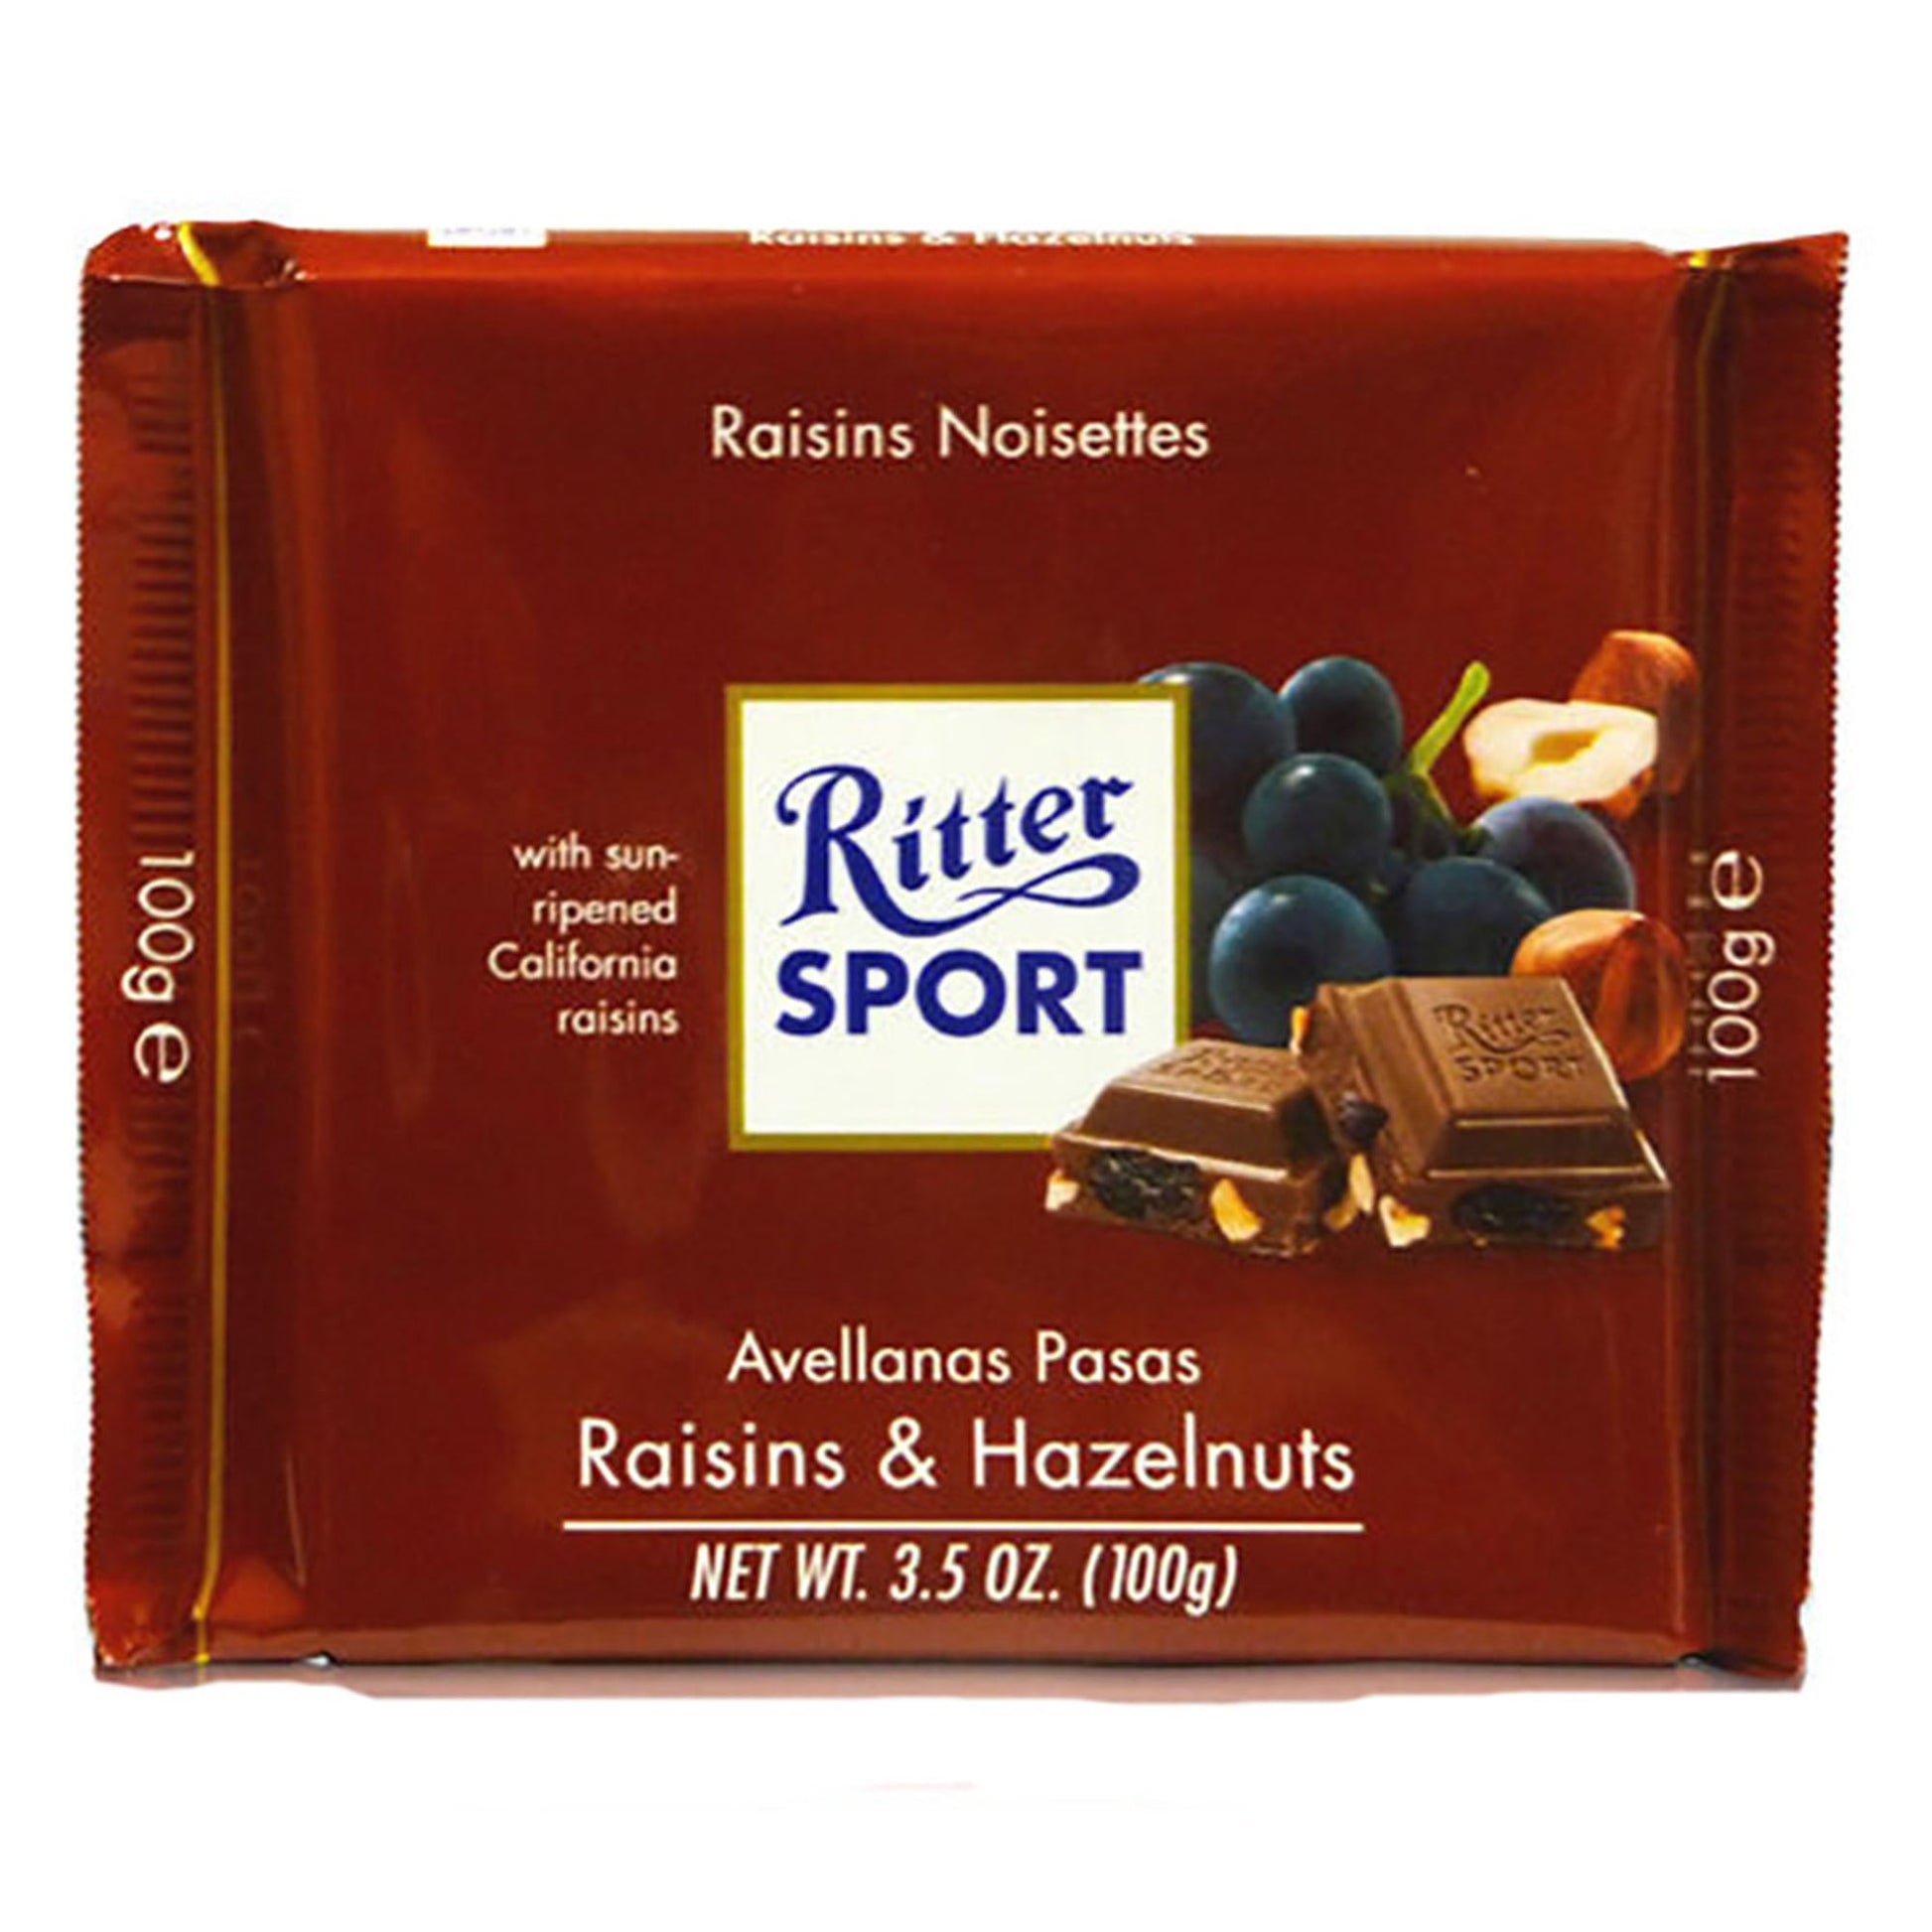 Ritter Raisins & Hazelnut 100G